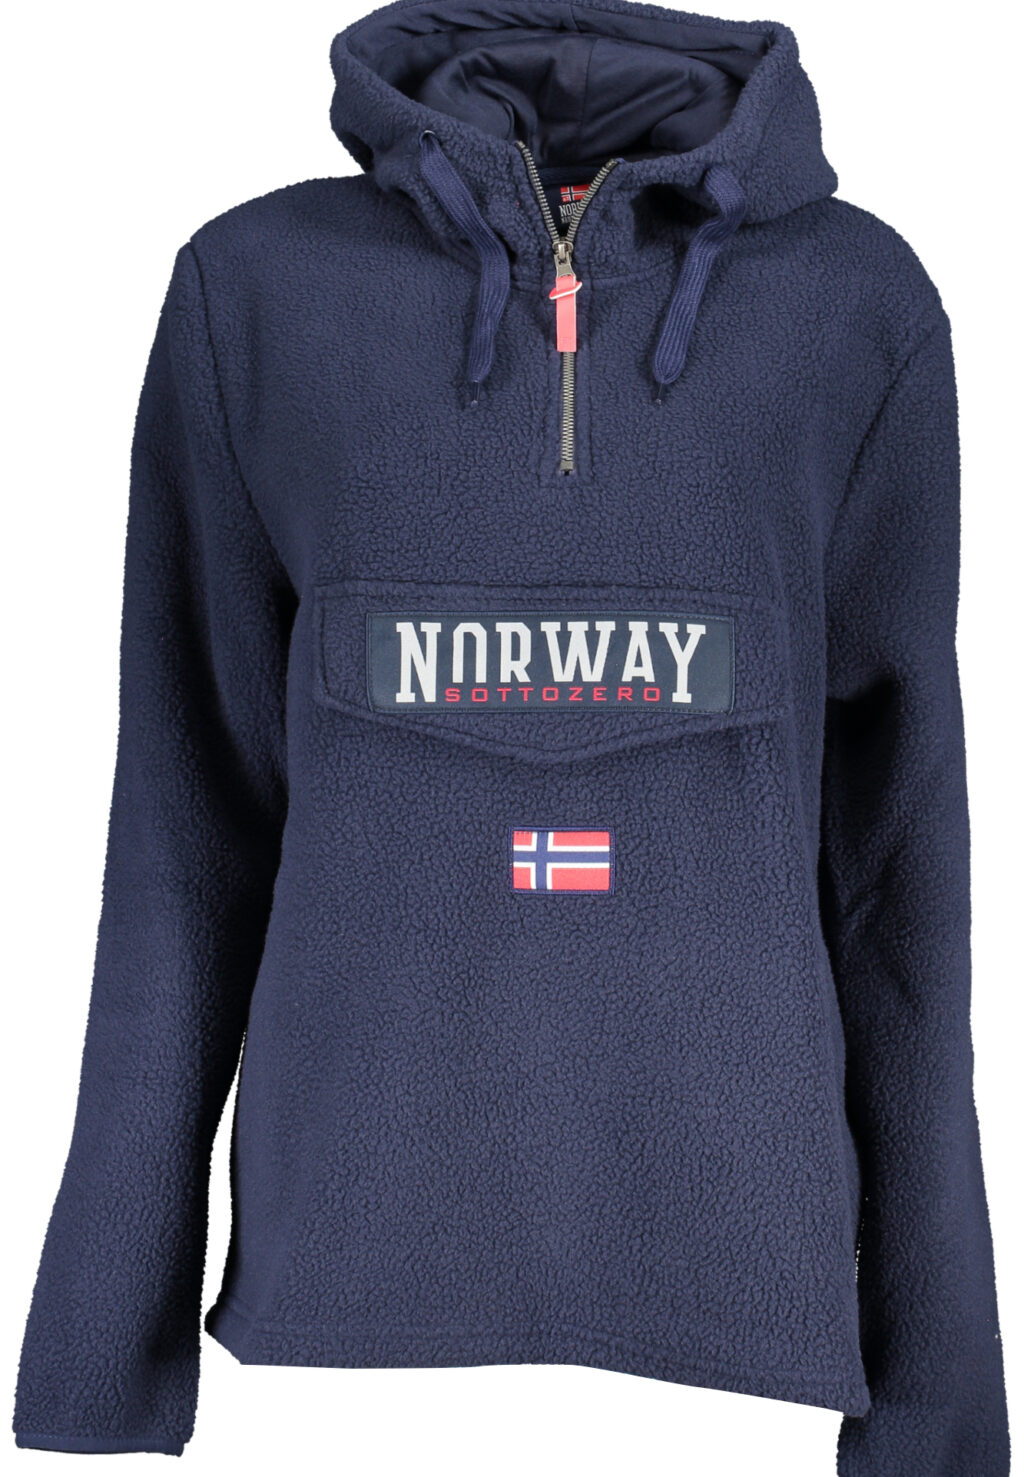 NORWAY 1963 WOMEN'S ZIPLESS SWEATSHIRT BLUE 139517_BLNAVY